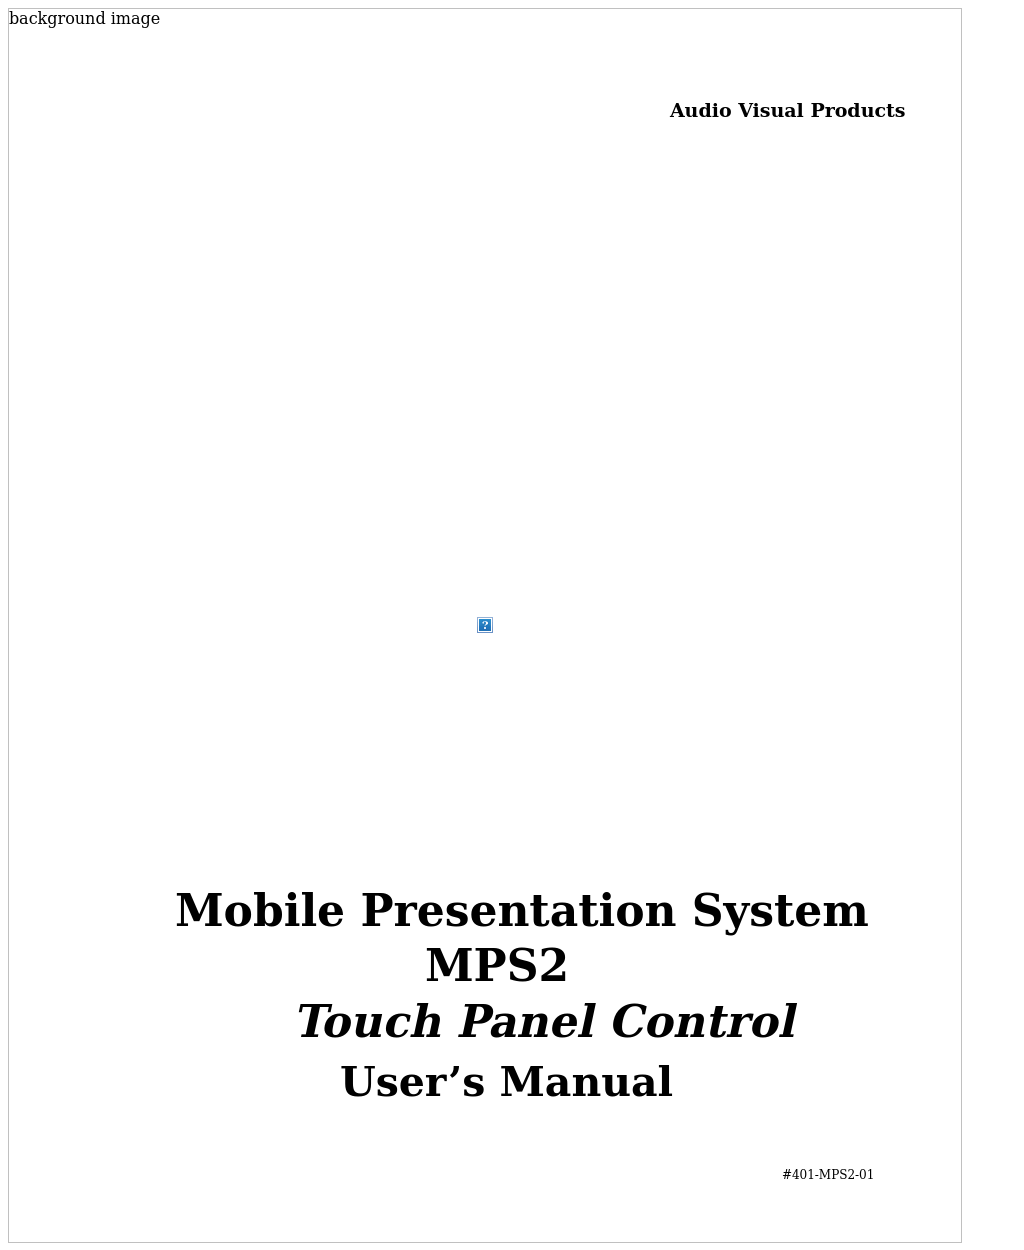 Mobile Presentation System MPS2